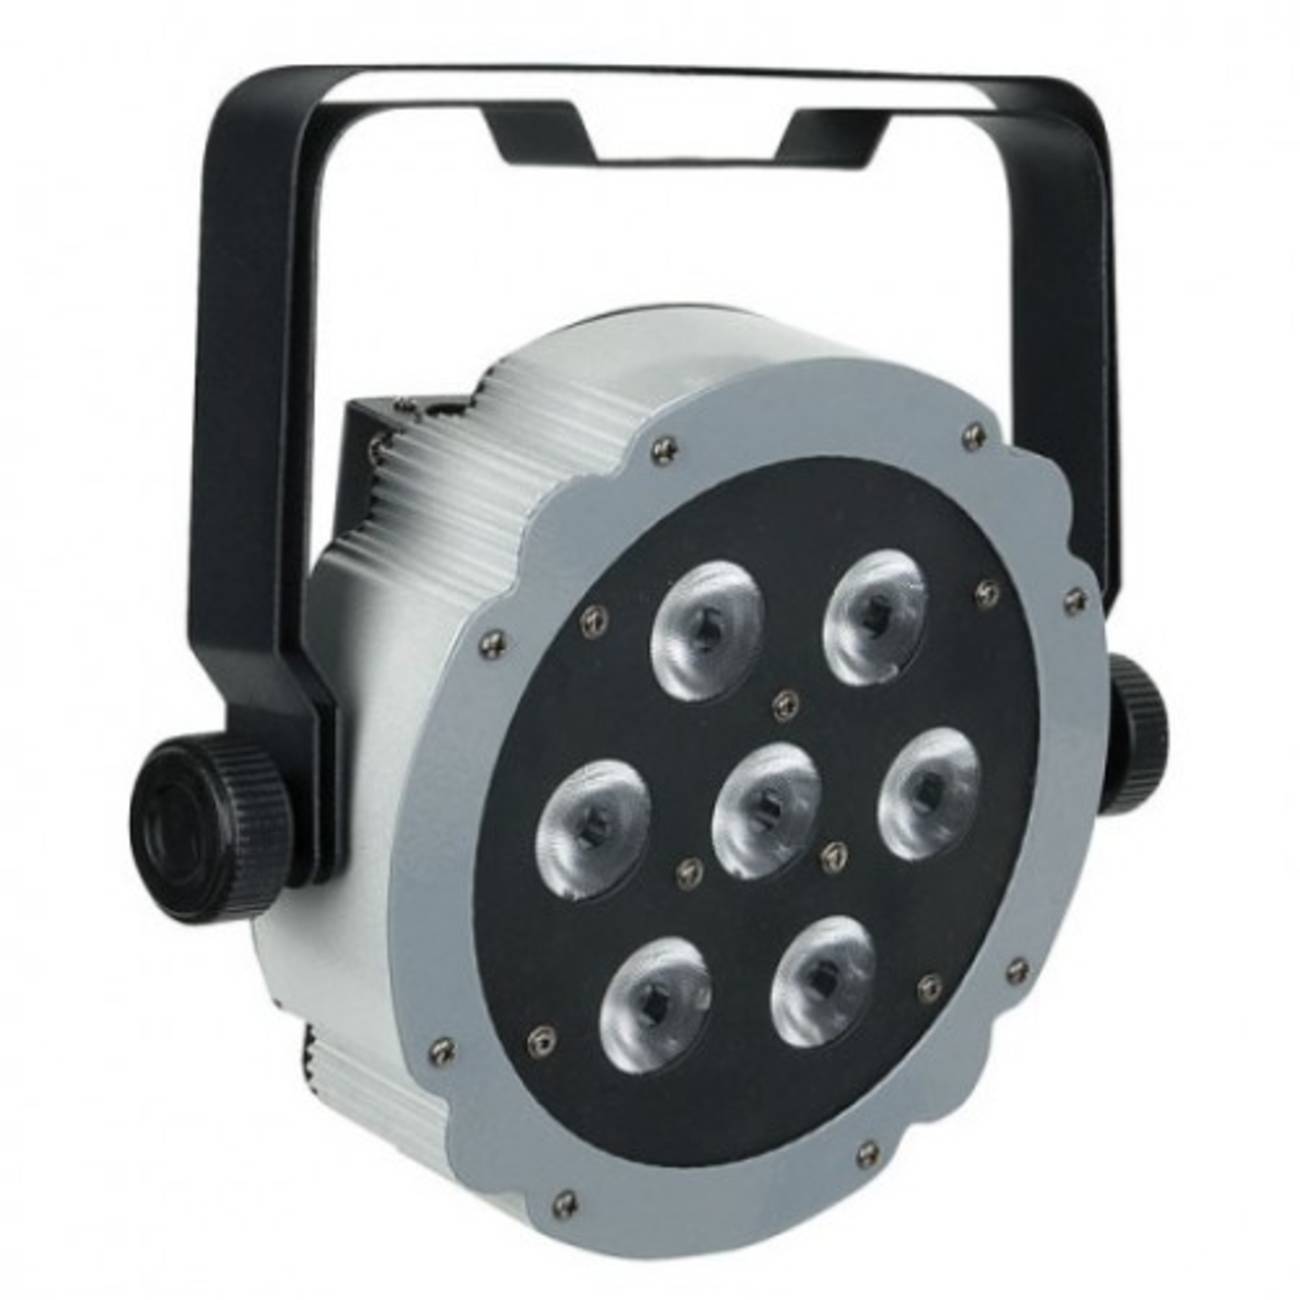 Прожектор RGBW XLR 3-Pin. Ice 400 7rgbw влагозащищенный ландшафтный светильник. Светильник сценический Showtec Spectral 260.